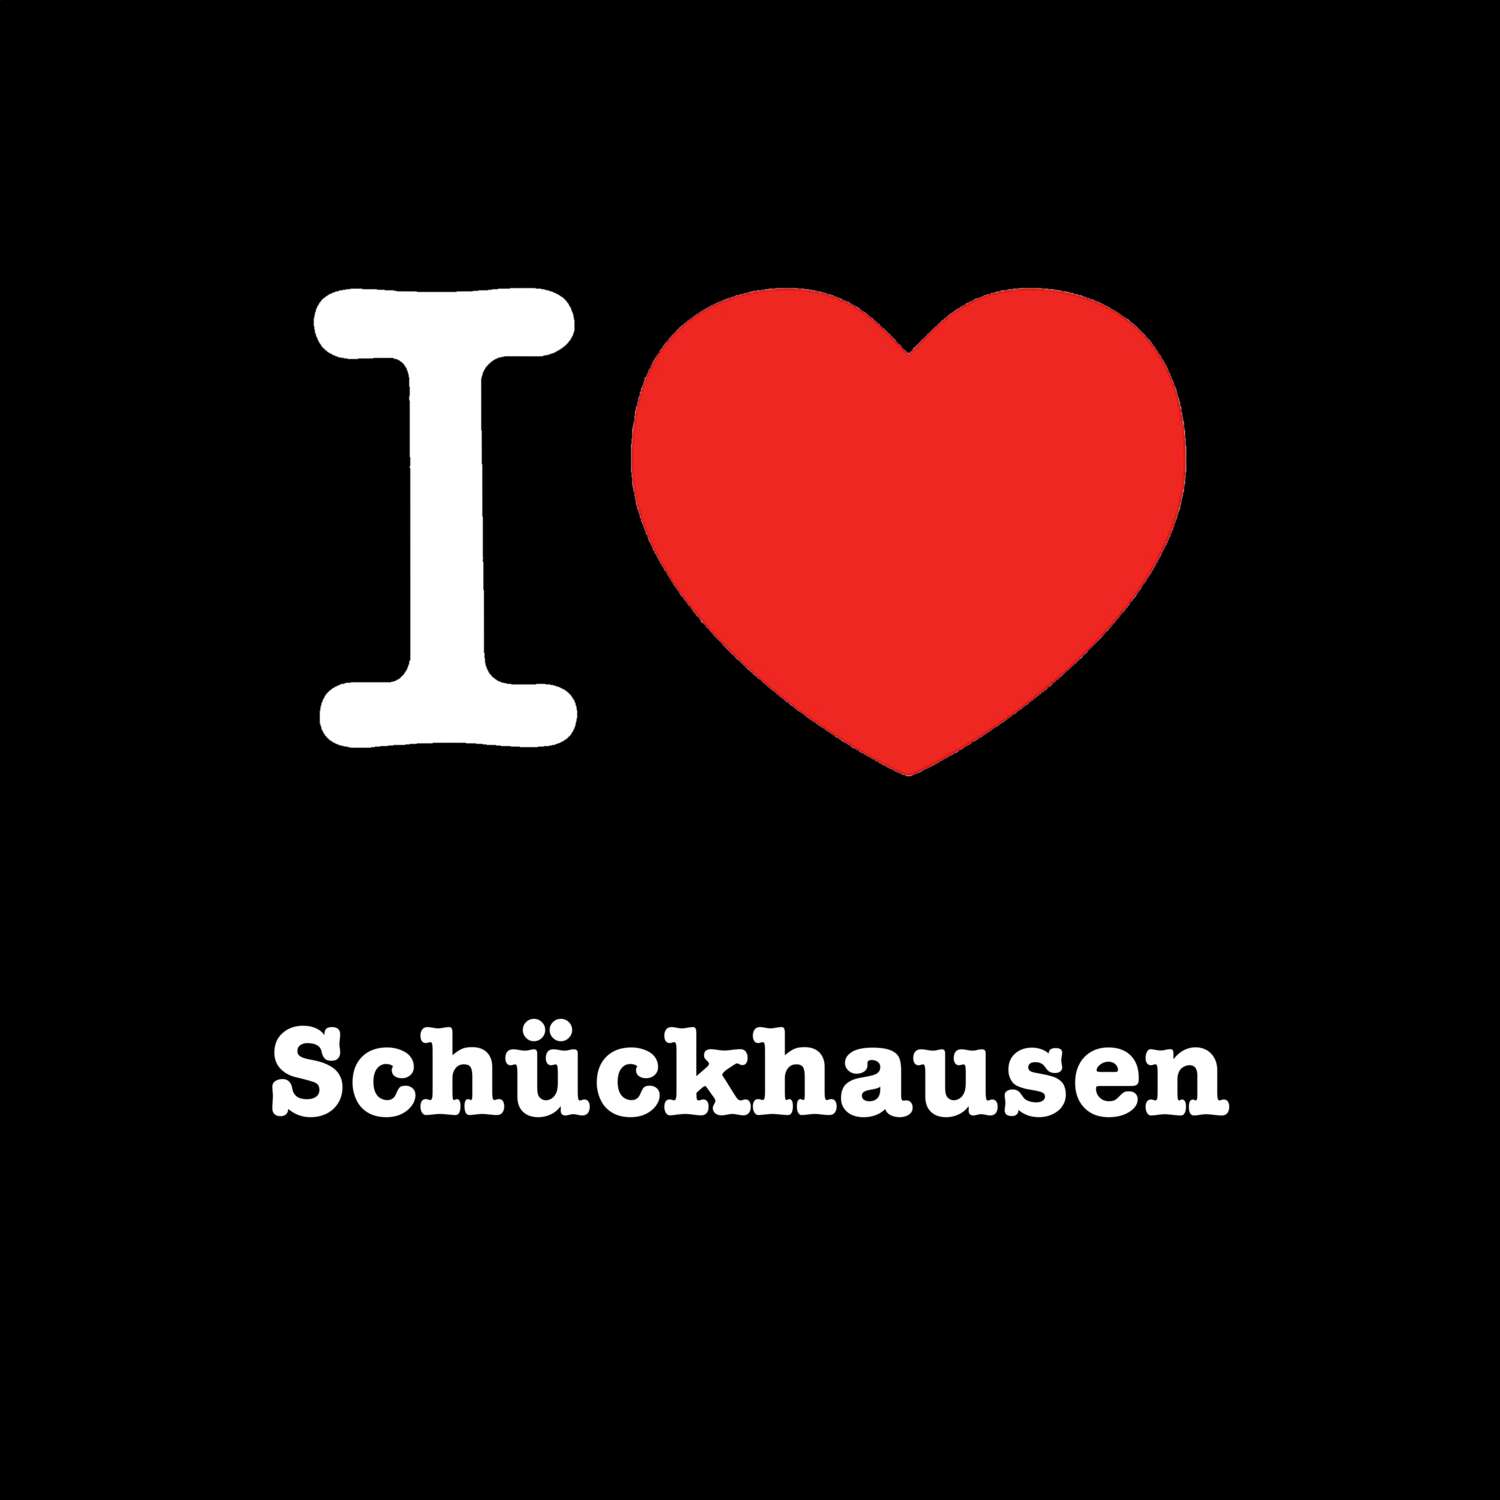 Schückhausen T-Shirt »I love«